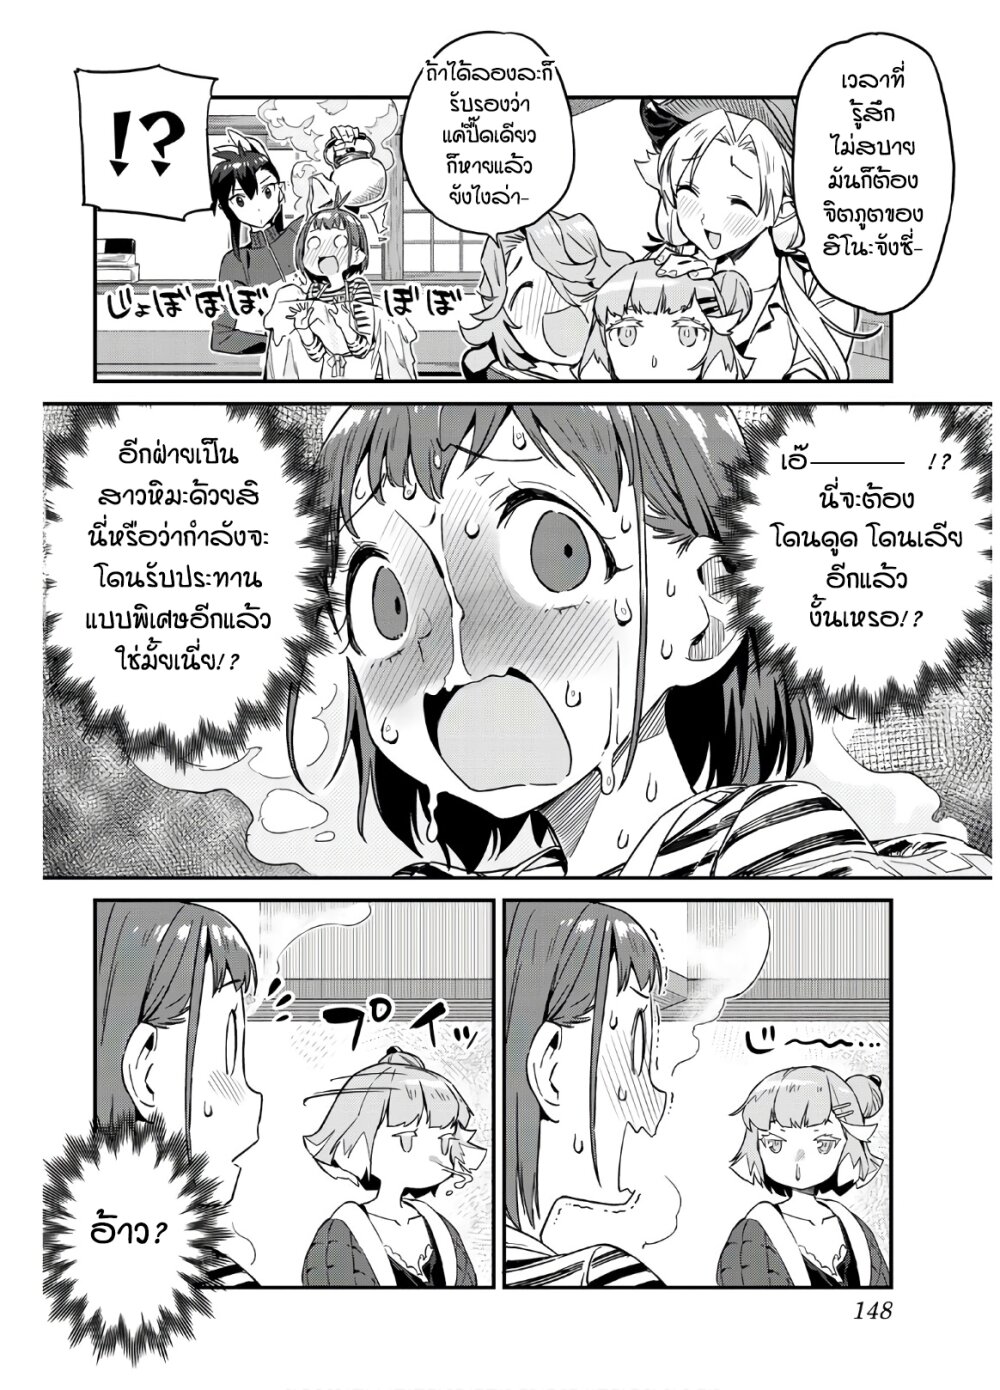 Youkai Izakaya non Bere ke - หน้า 4